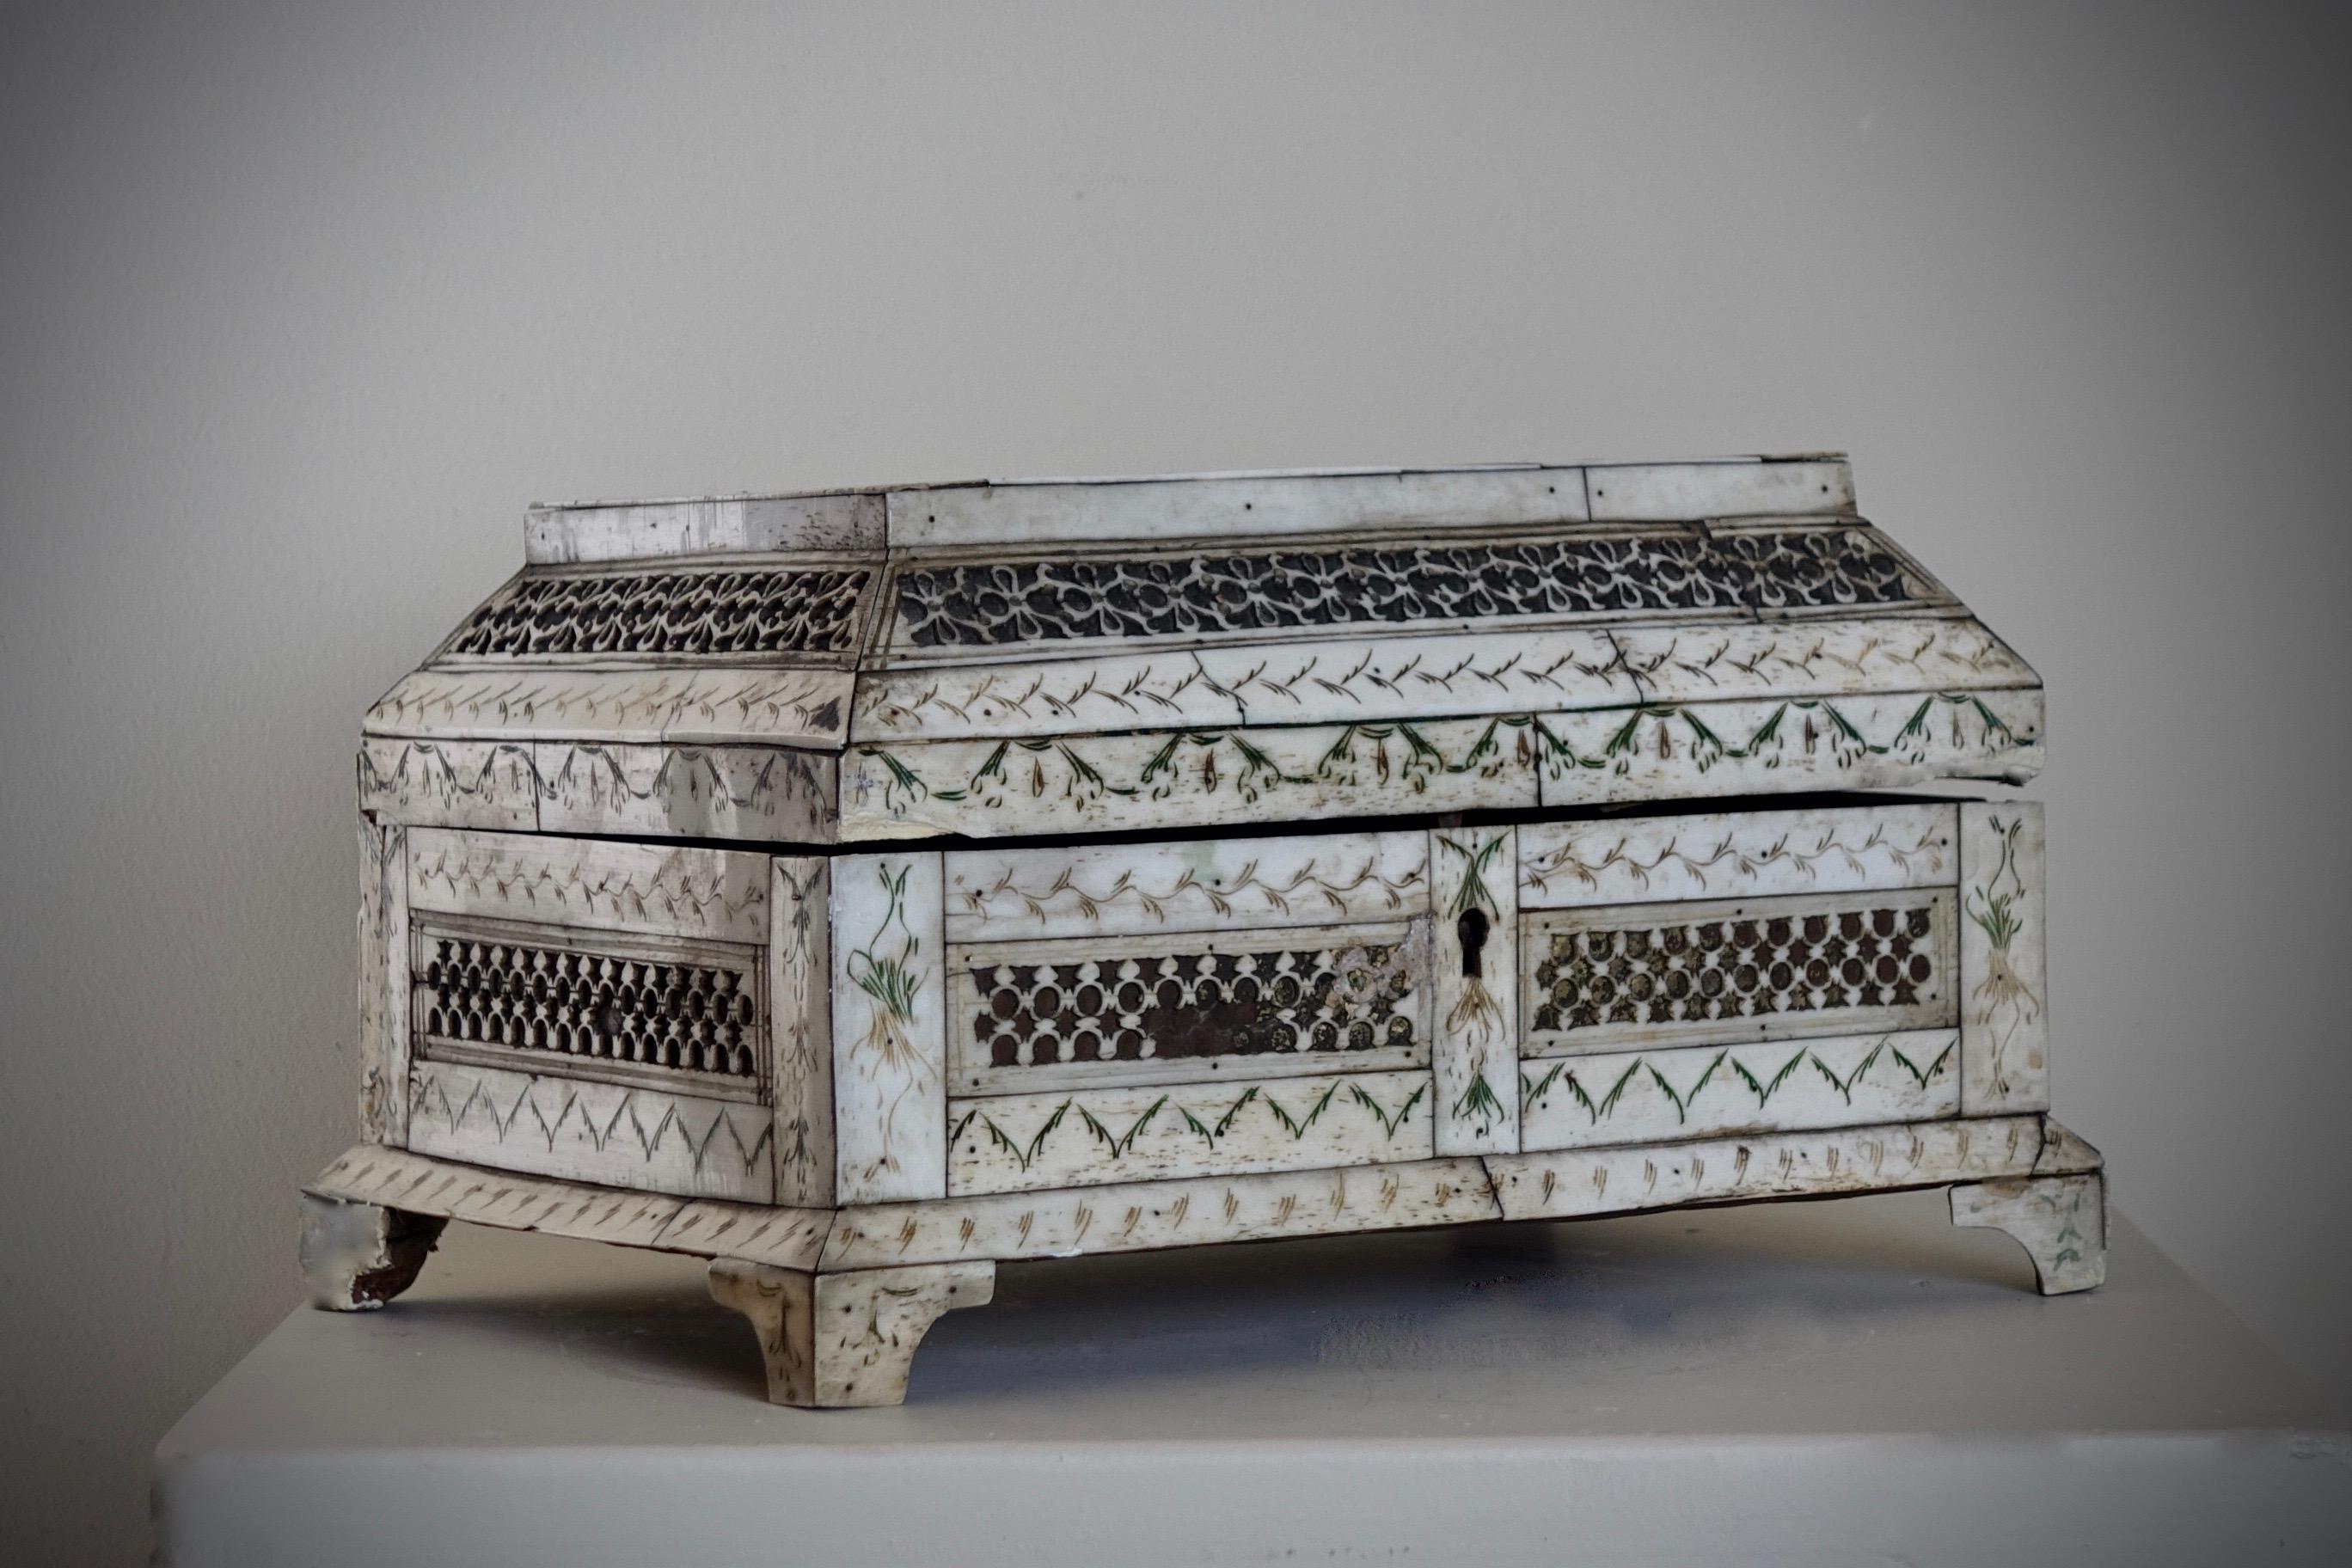 Russische geschnitzte Tischbox aus Knochen
Tischdose aus geschnitztem Knochen
Nördlich von Russland, 18. Jahrhundert
12,5 x  23,2 x 7 cm

Rechteckiger Kasten mit Holzkern aus Knochenfurnier, verziert mit geometrischen Friesen und gemaltem